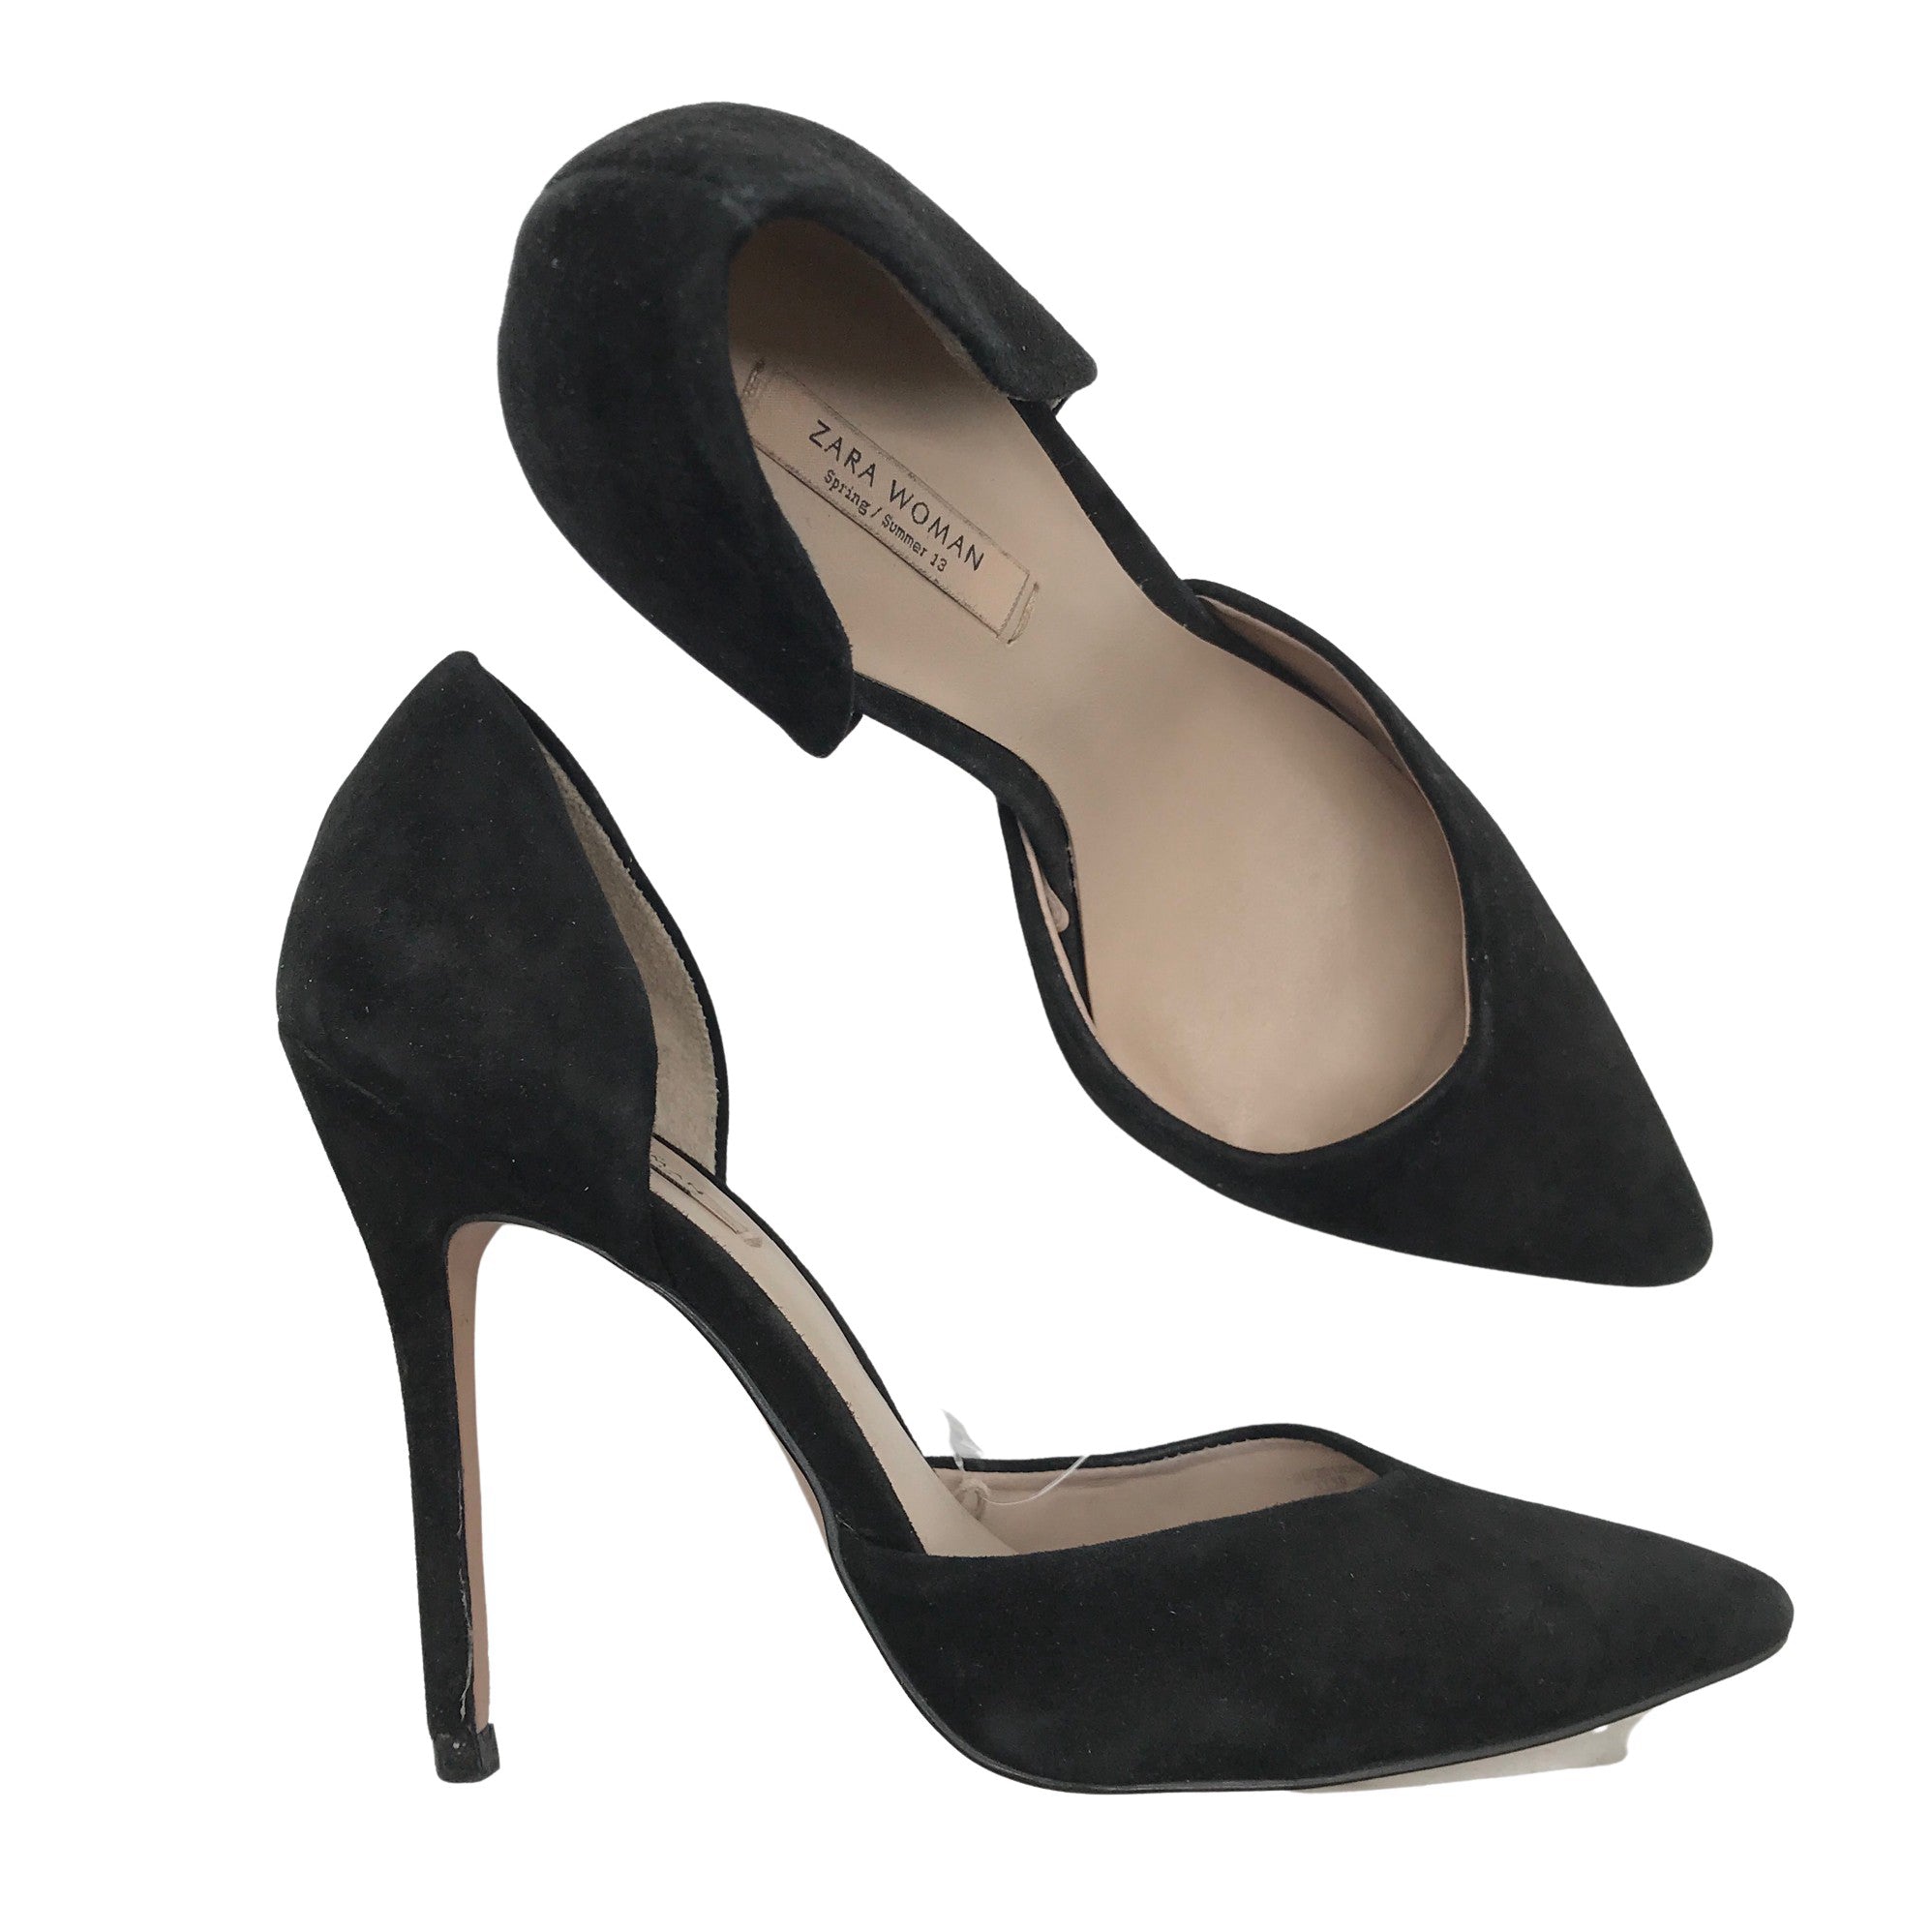 Zara Pointed Mid Heel Court Pumps | Red shoes heels, Heels, Wedding shoes  mid heel